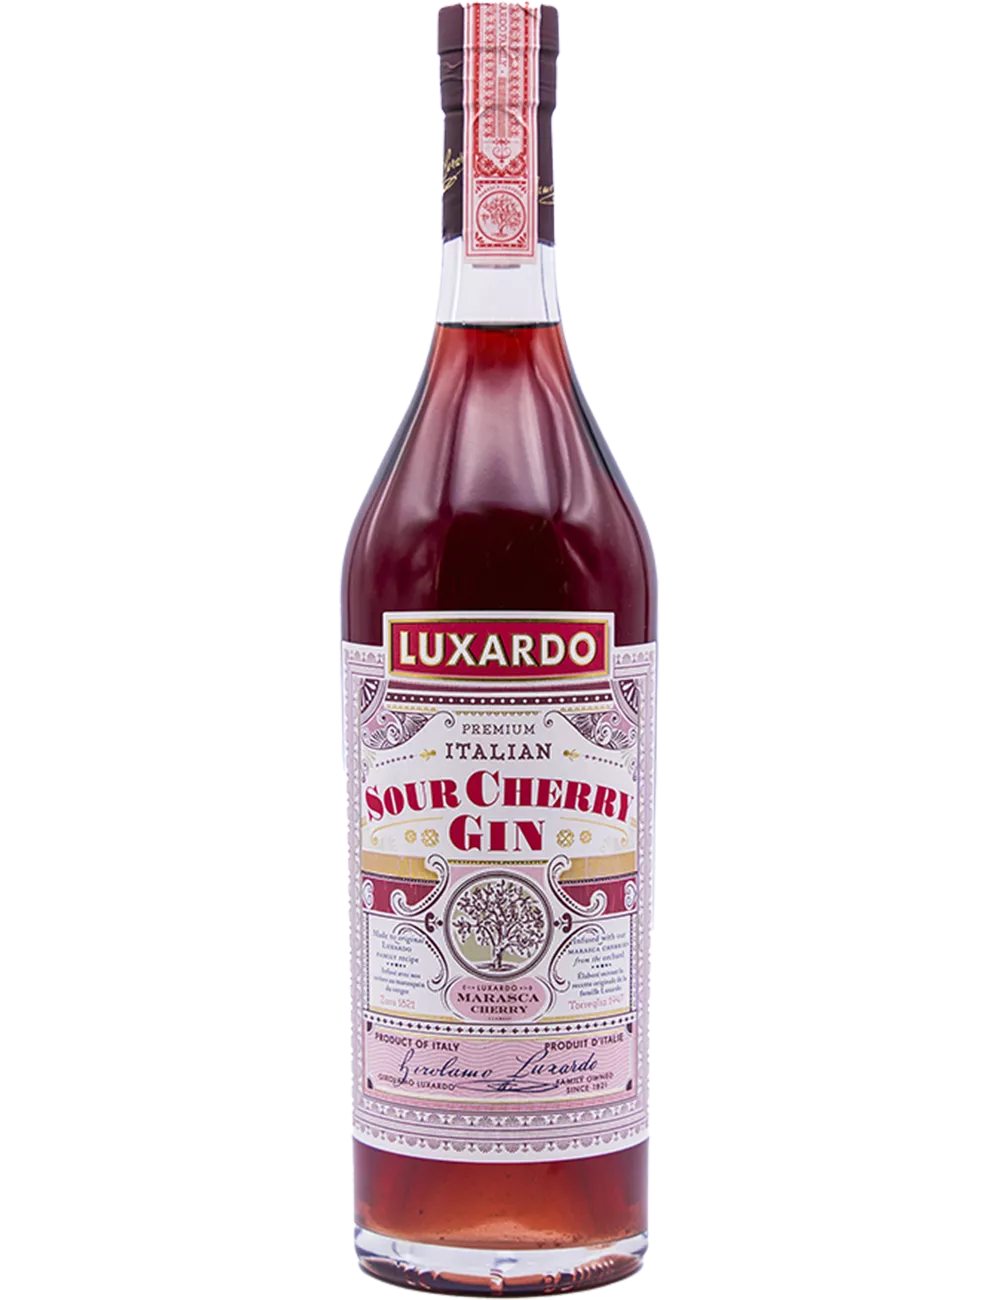 Luxardo - Sour Cherry - Gin aromatisé